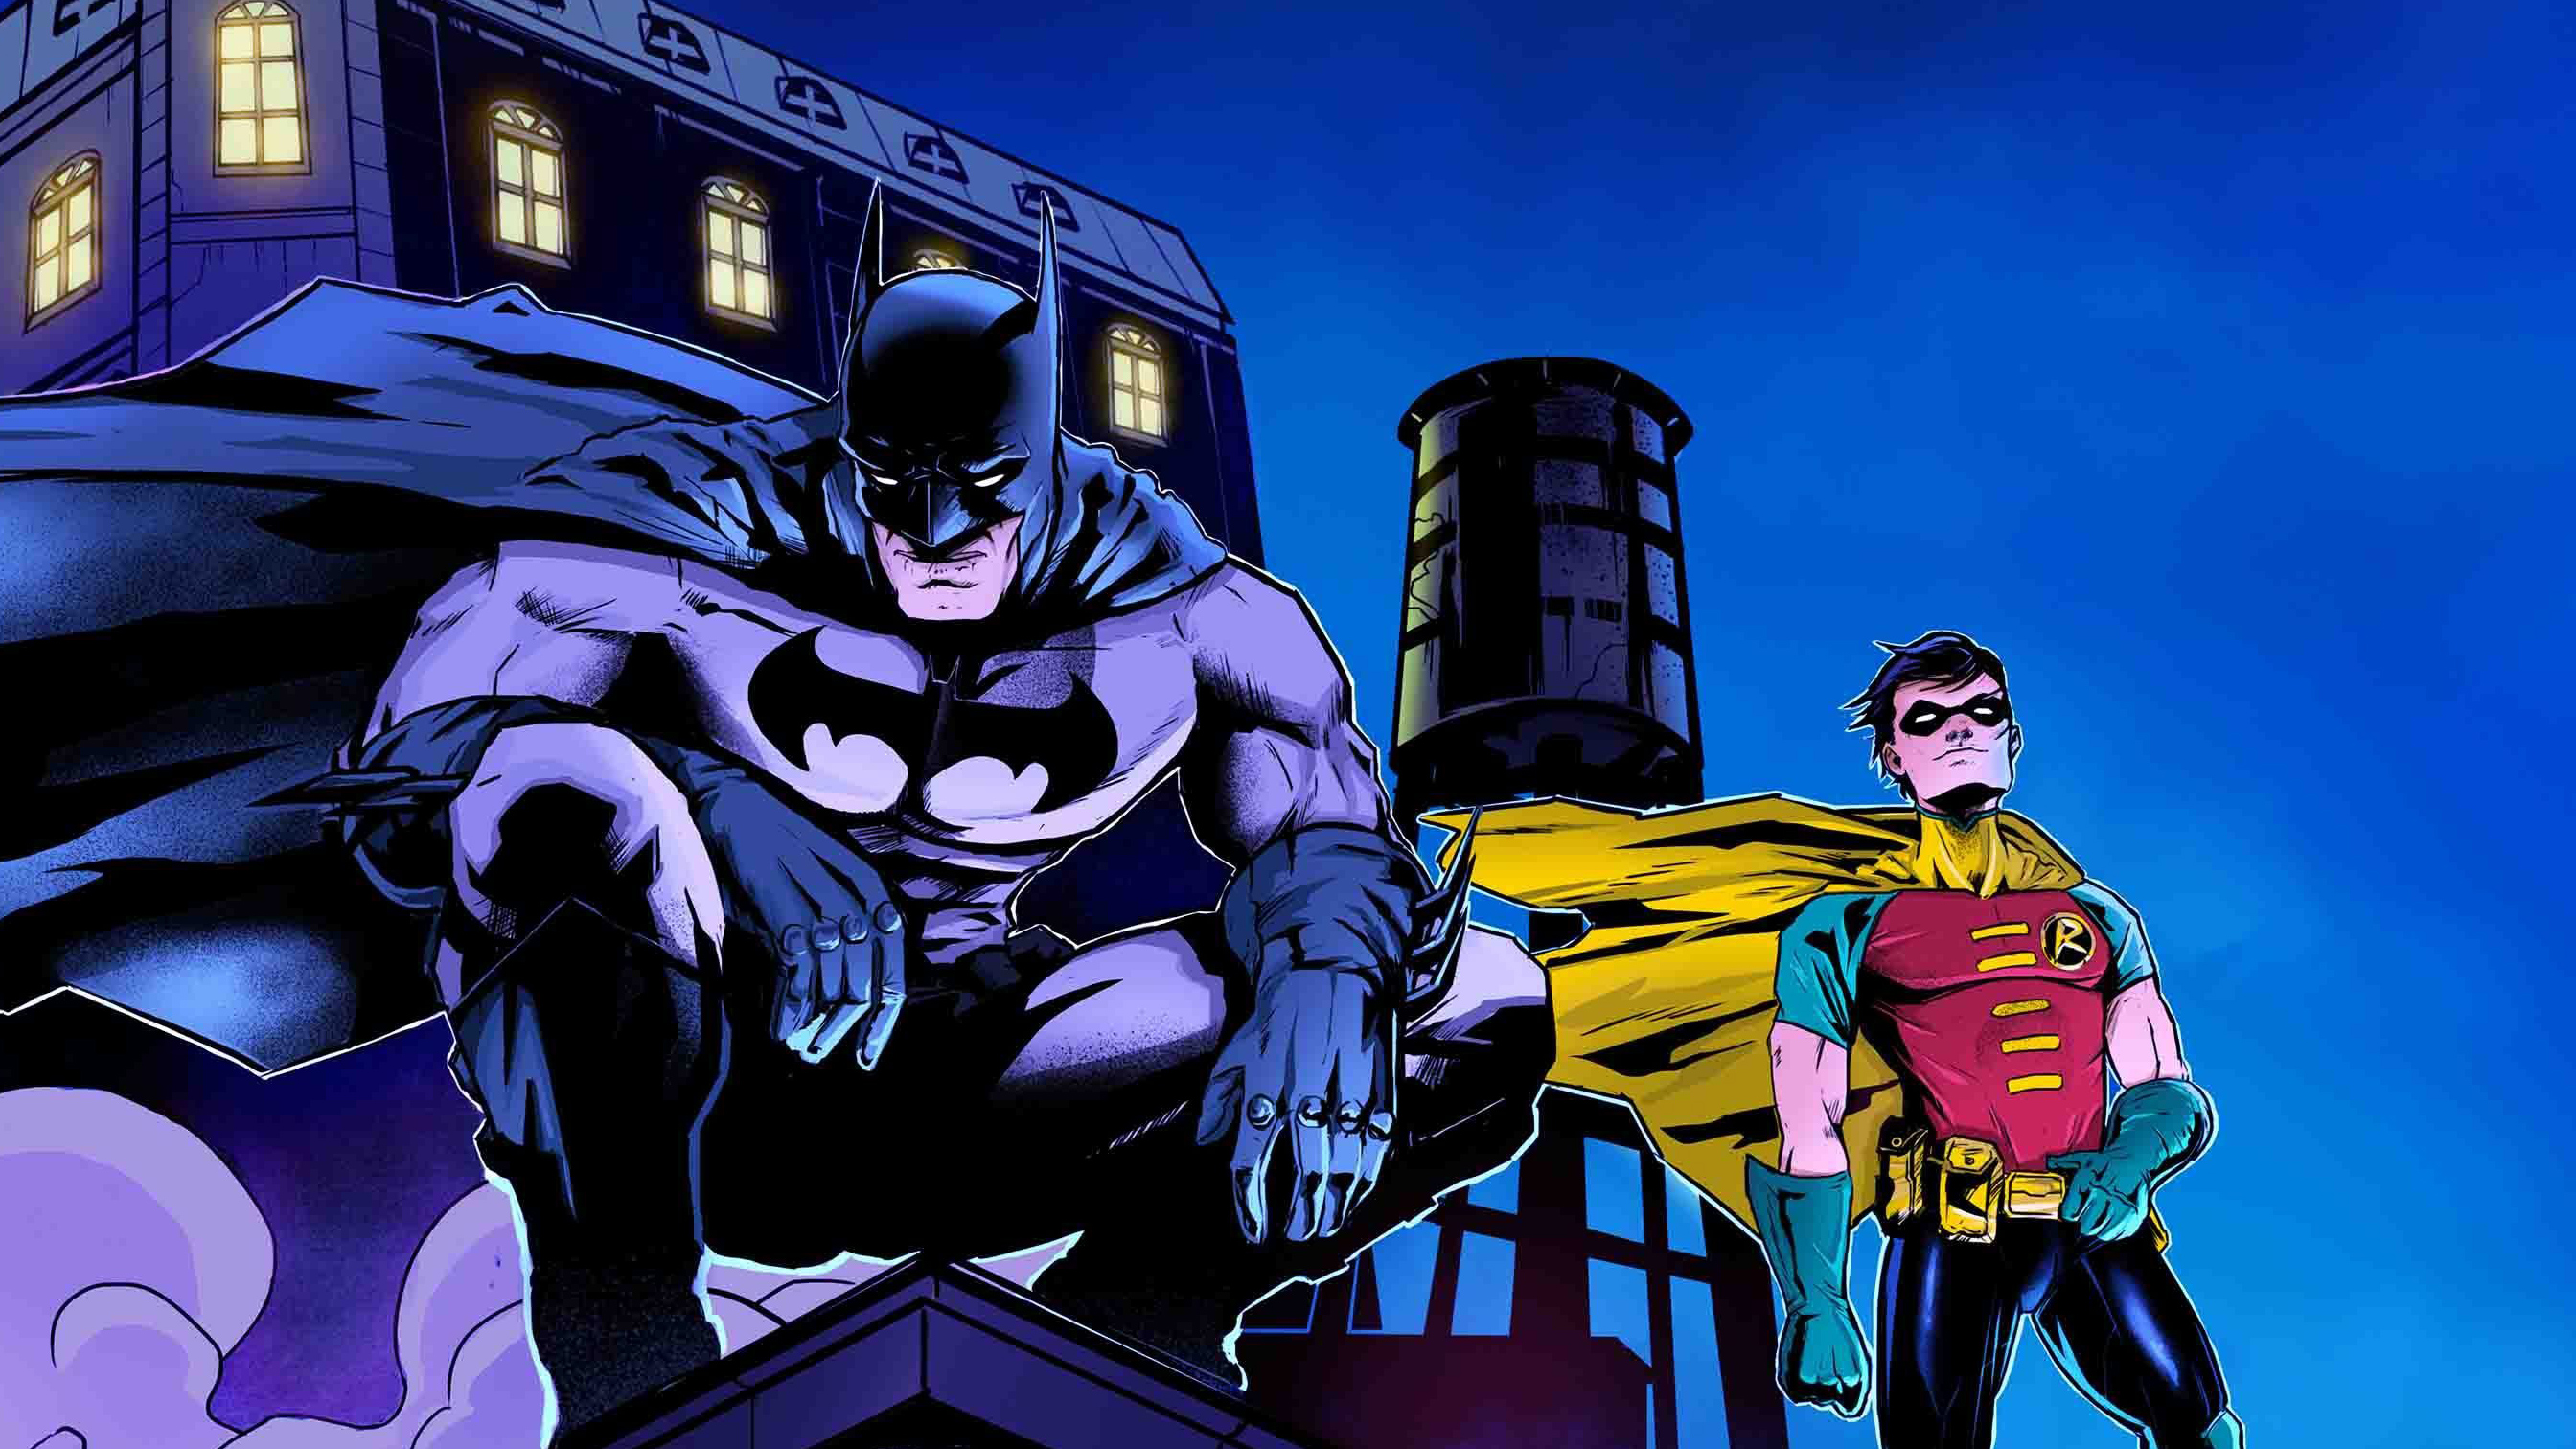 Batman & Robin Wallpaper: Batman  Batman wallpaper, Superhero wallpaper,  Batman